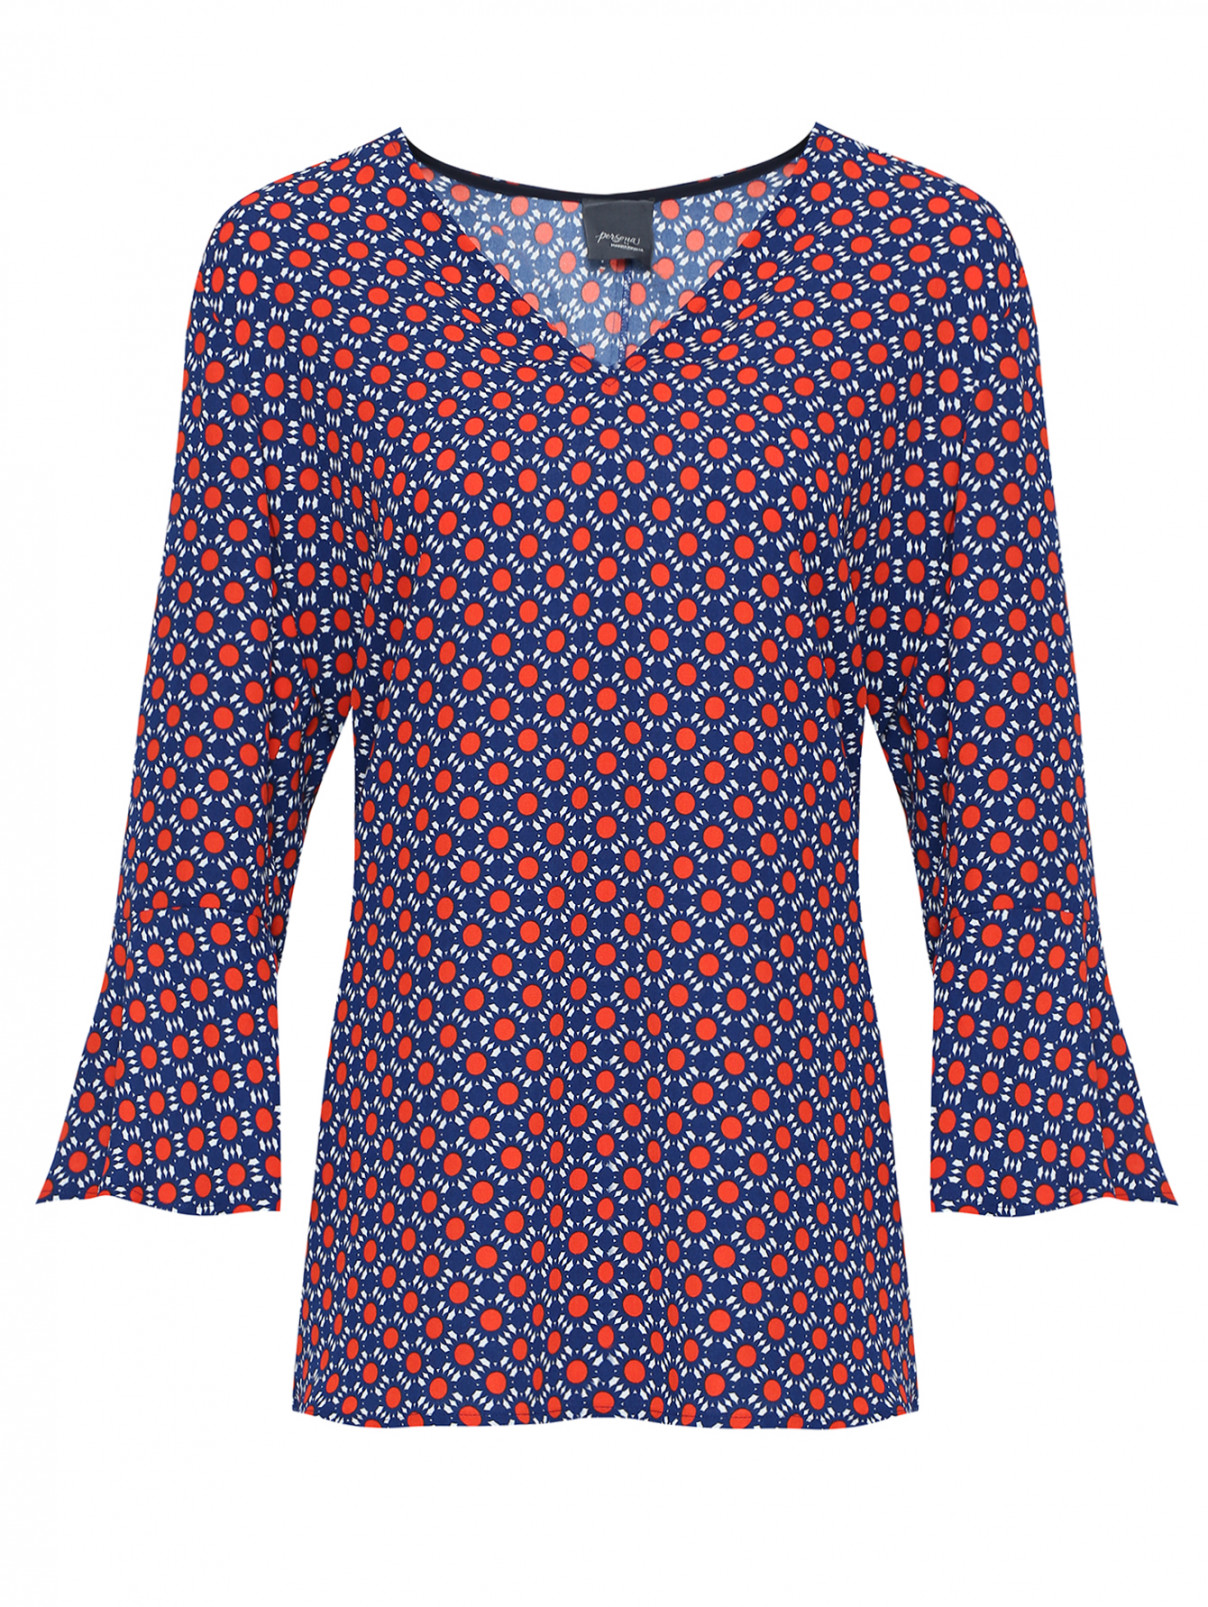 Блузка свободного кроя , с геометрическим принтом Persona by Marina Rinaldi  –  Общий вид  – Цвет:  Мультиколор